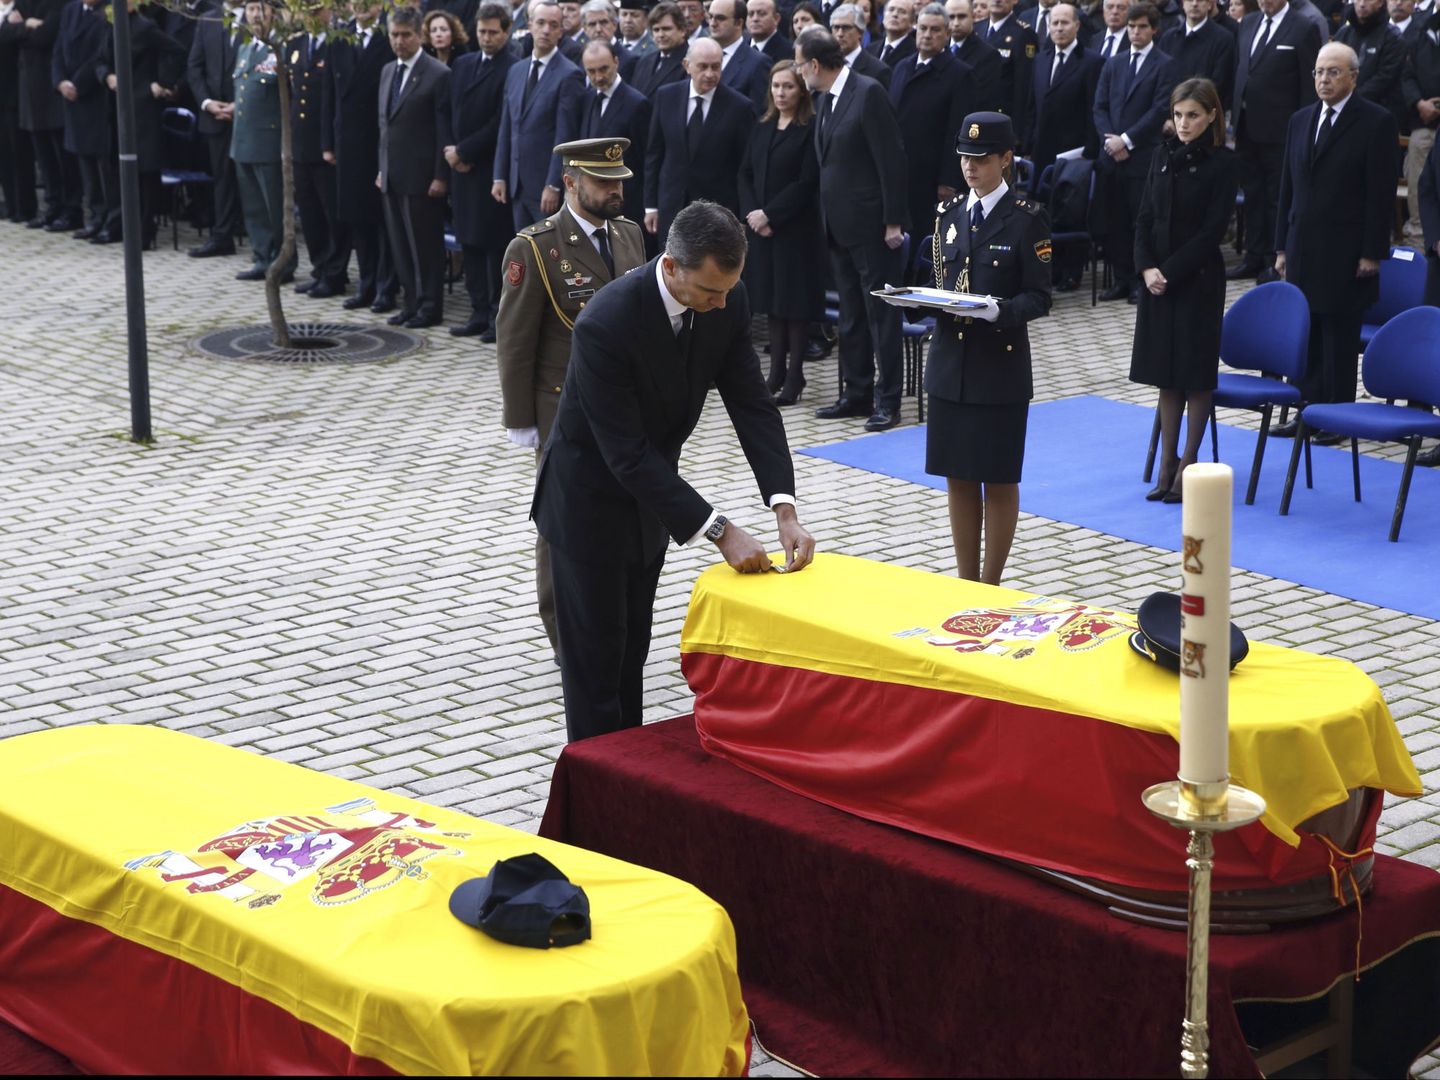 Felipe VI impone la cruz de oro al mérito policial a título póstumo a los policías fallecidos en el atentado. (EFE)